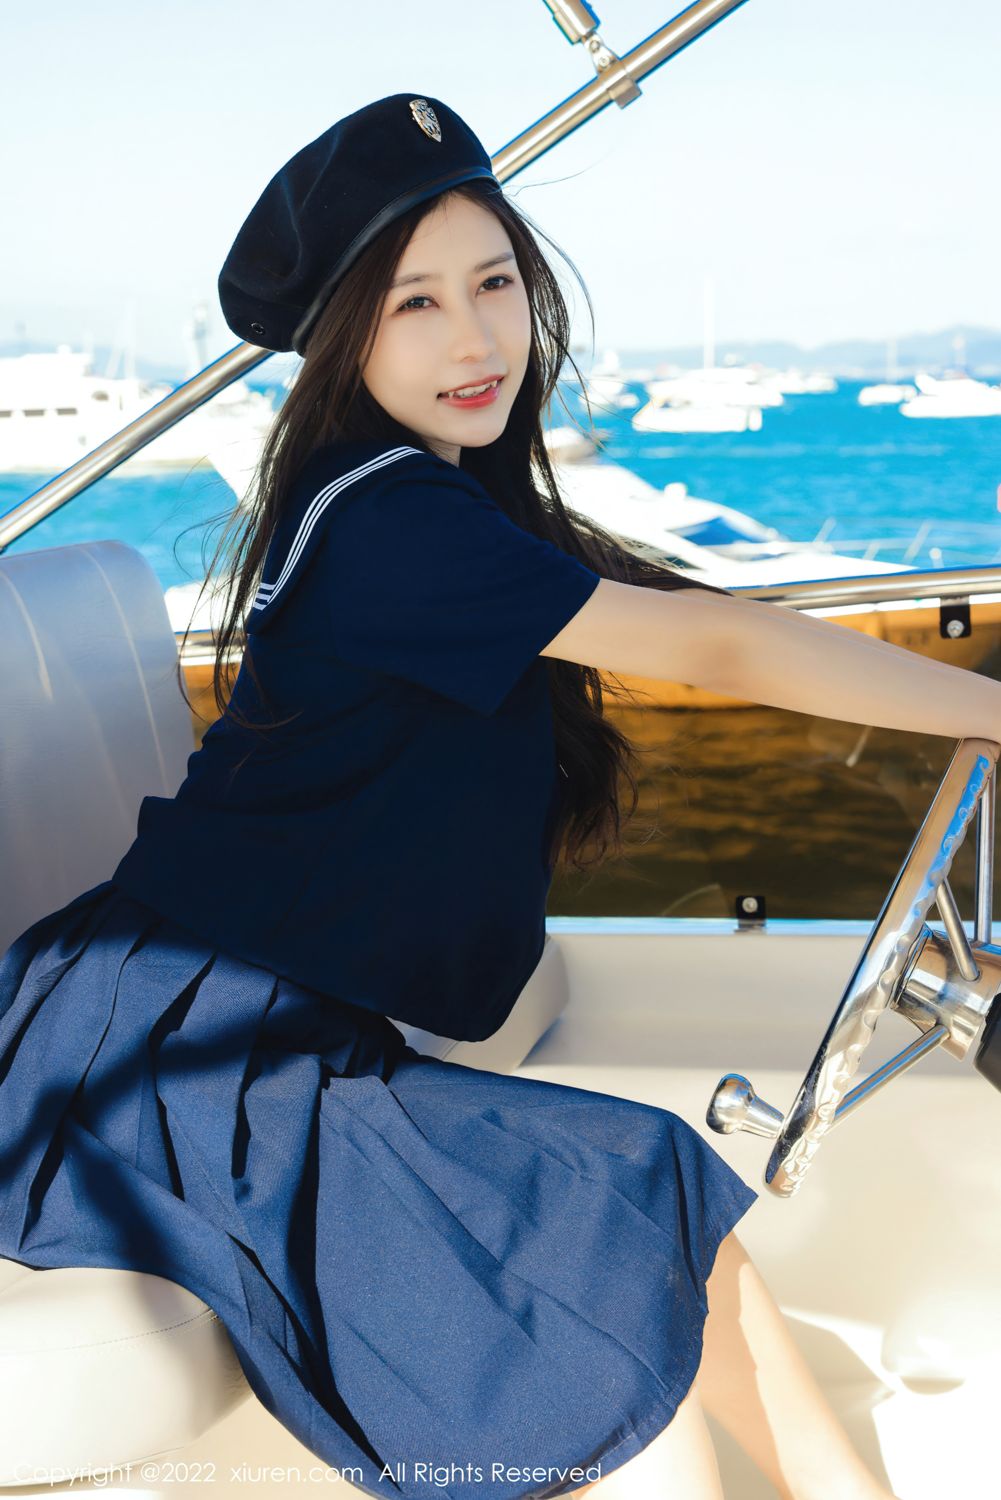 看那游艇上的海军服短裙美女尹甜甜清爽甜美激情浪漫海上写真套图图片